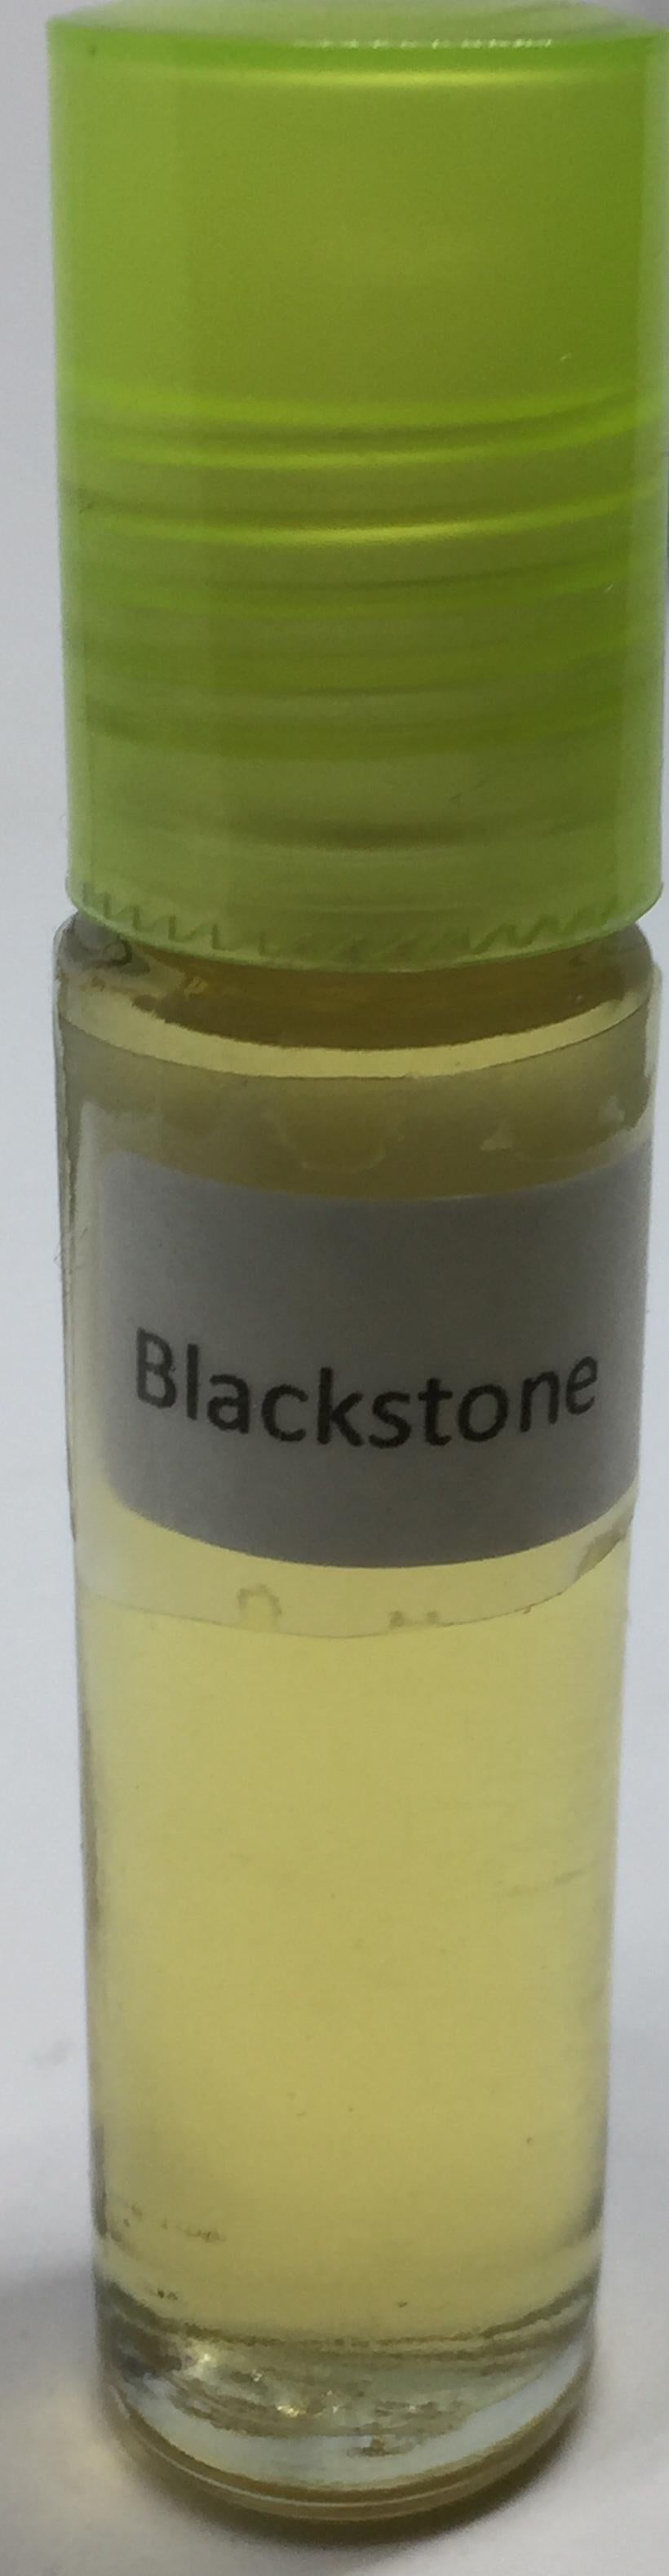 Blackstone: Fragrance(Perfume)Body Oil Men